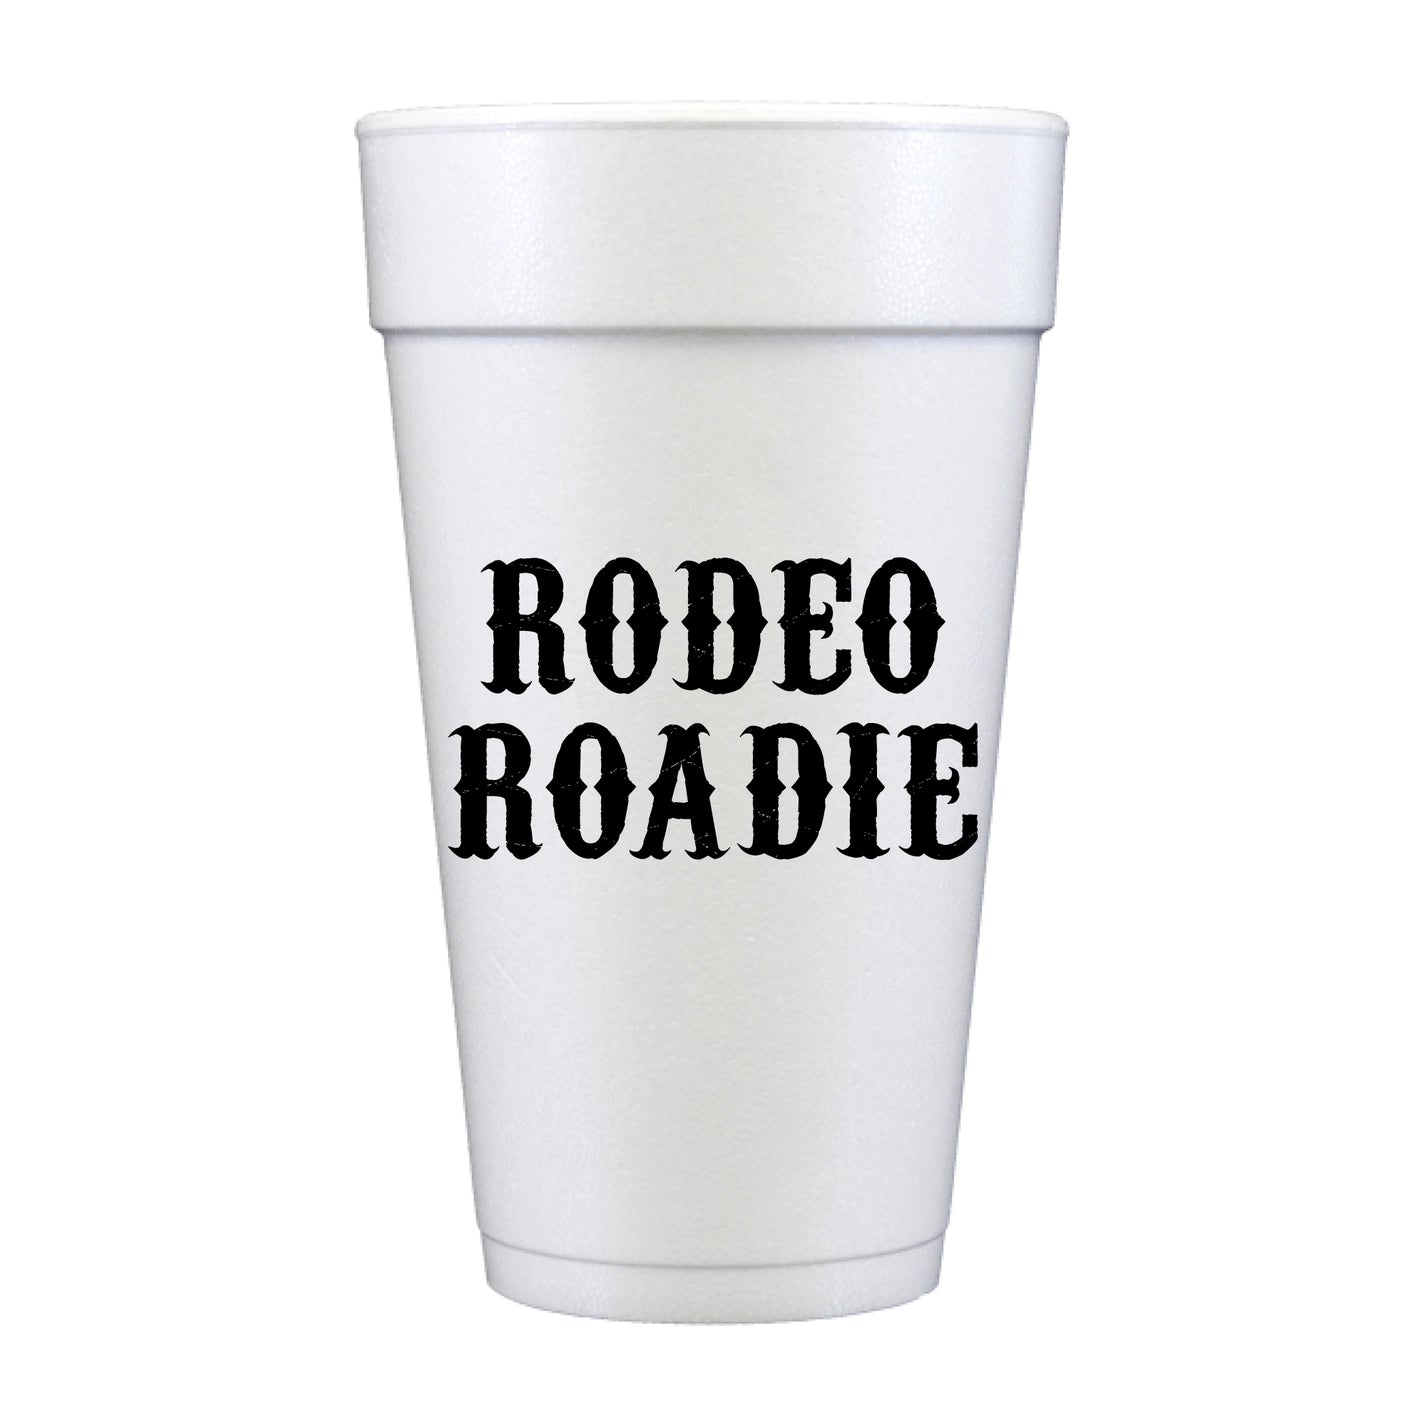 "Rodeo Roadie" Styros | Pack of 10